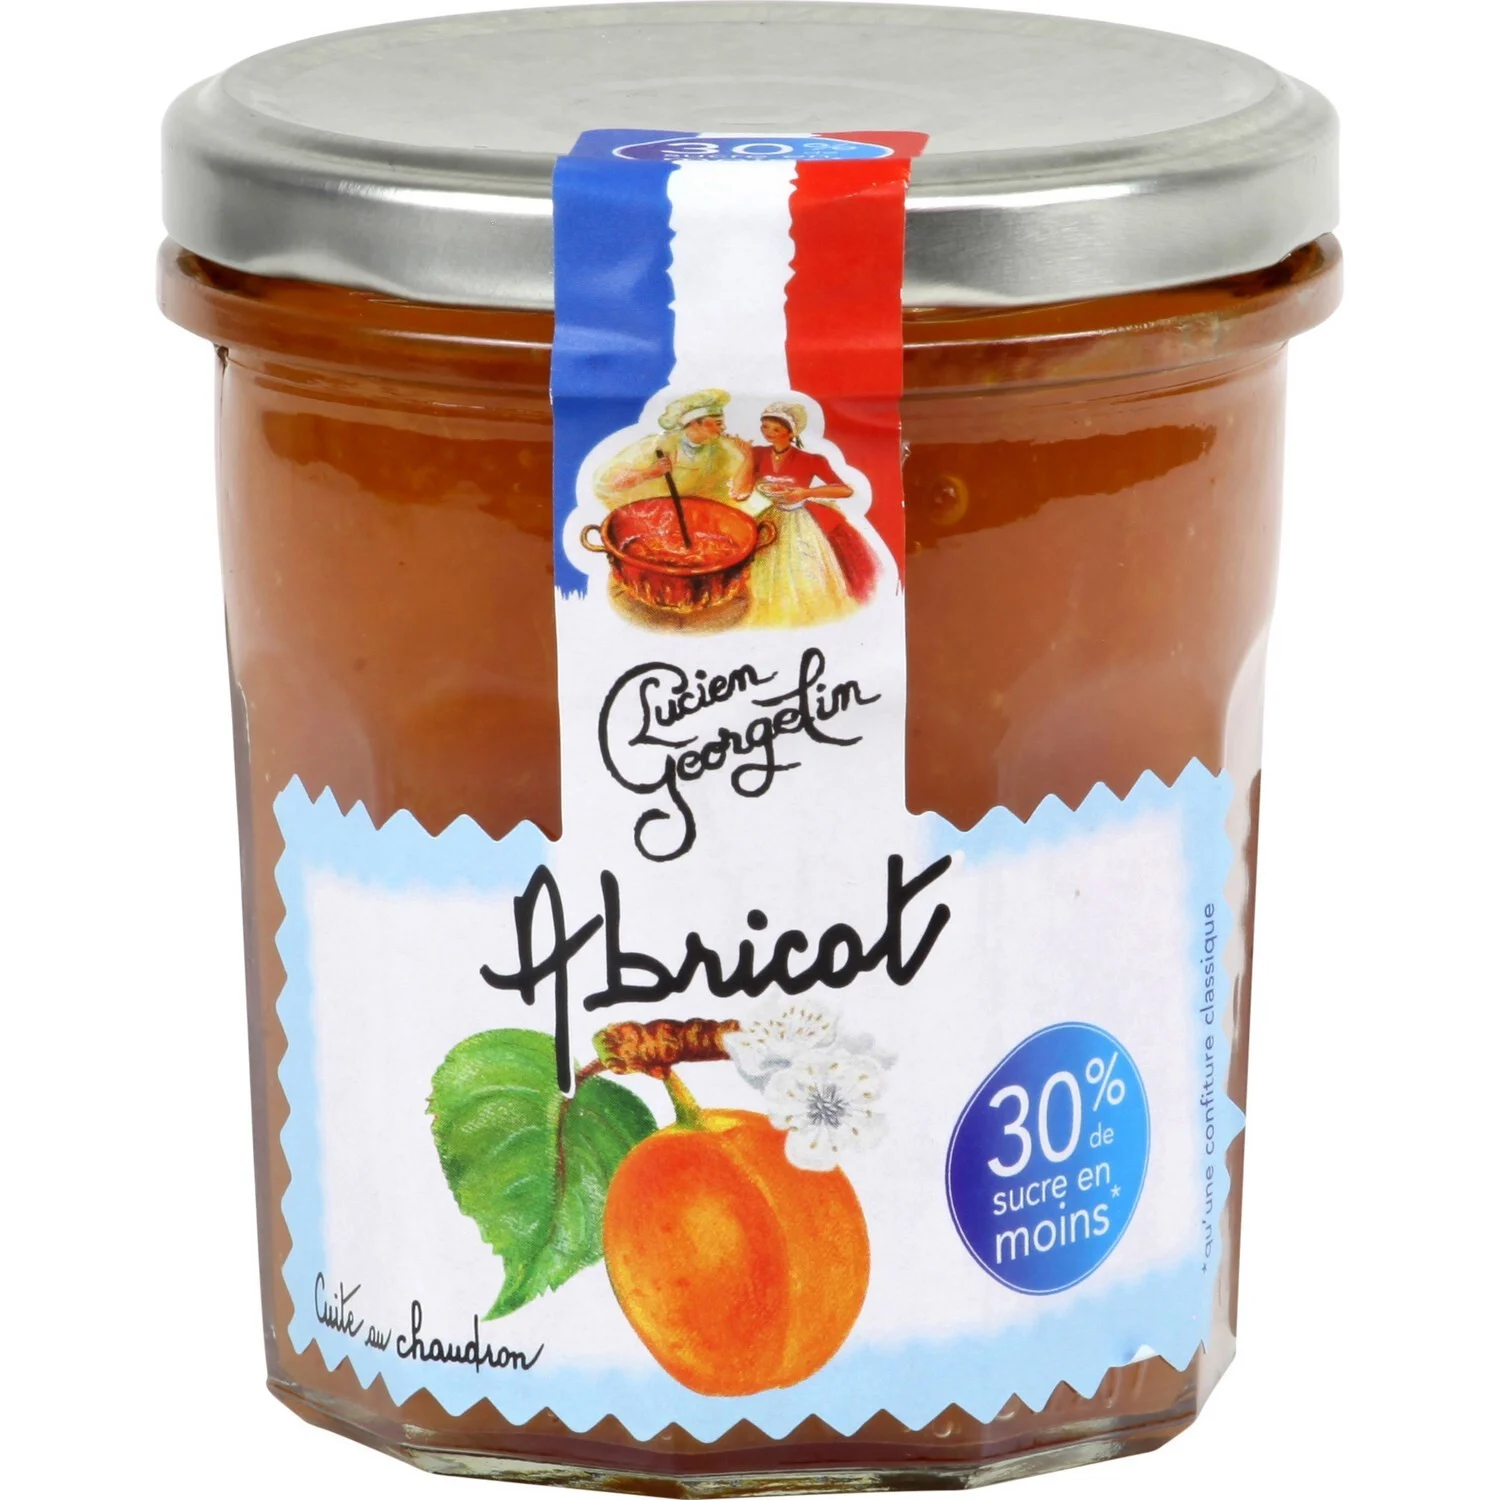 Gourmet and Light Apricot Jam
Gold Medal at the Concours Général Agricole de Paris 2019 320g - LUCIEN GEORGELIN